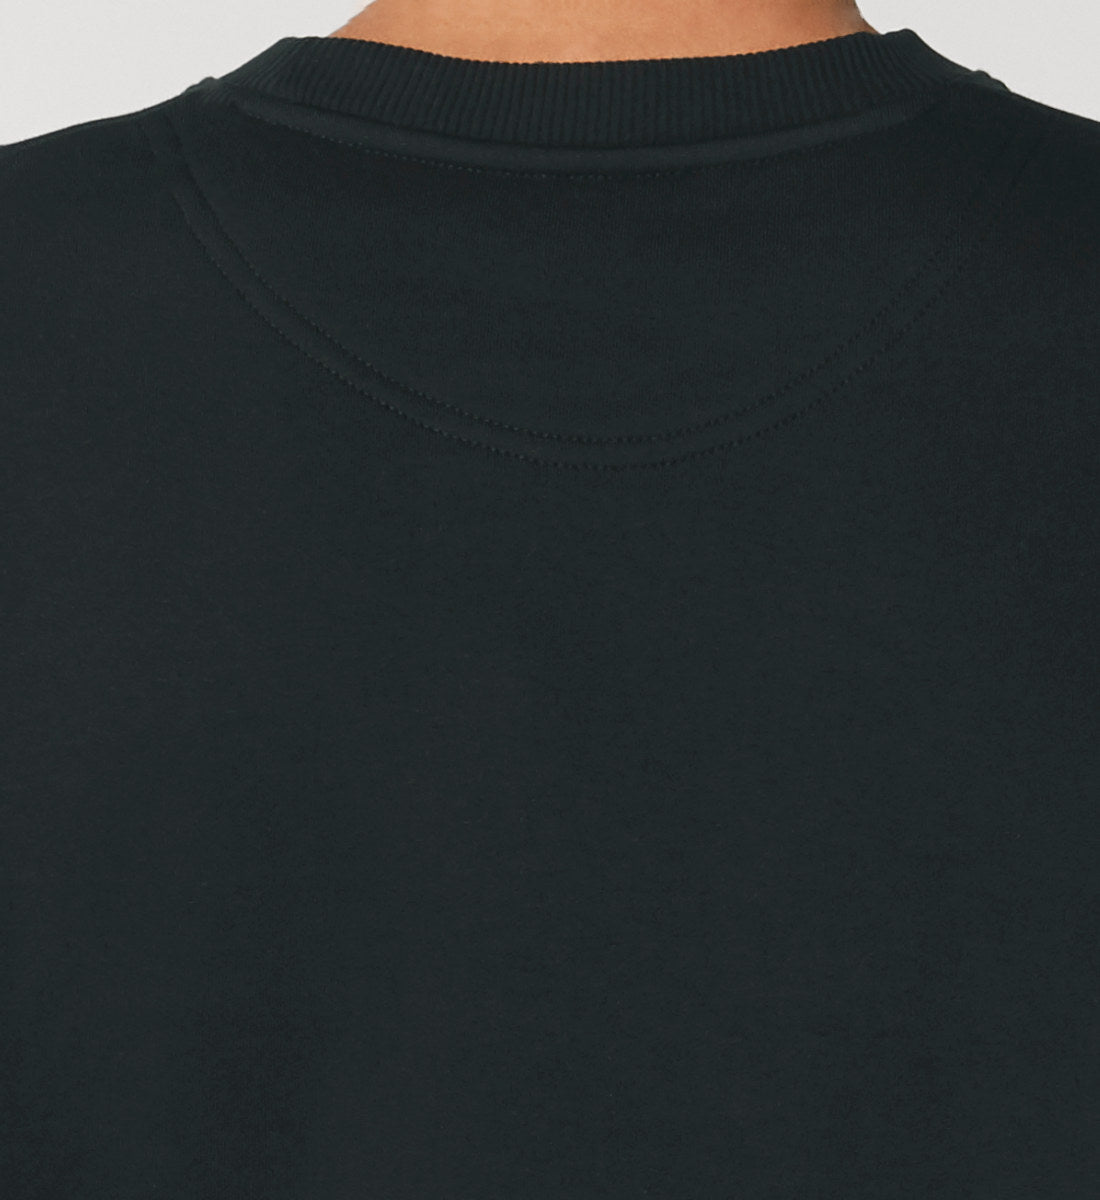 Schwarzes Sweatshirt Unisex Relaxed Fit für Frauen und Männer bedruckt mit dem Design der Roger Rockawoo Kollektion Rocknroll Weekend Guitar Goddess